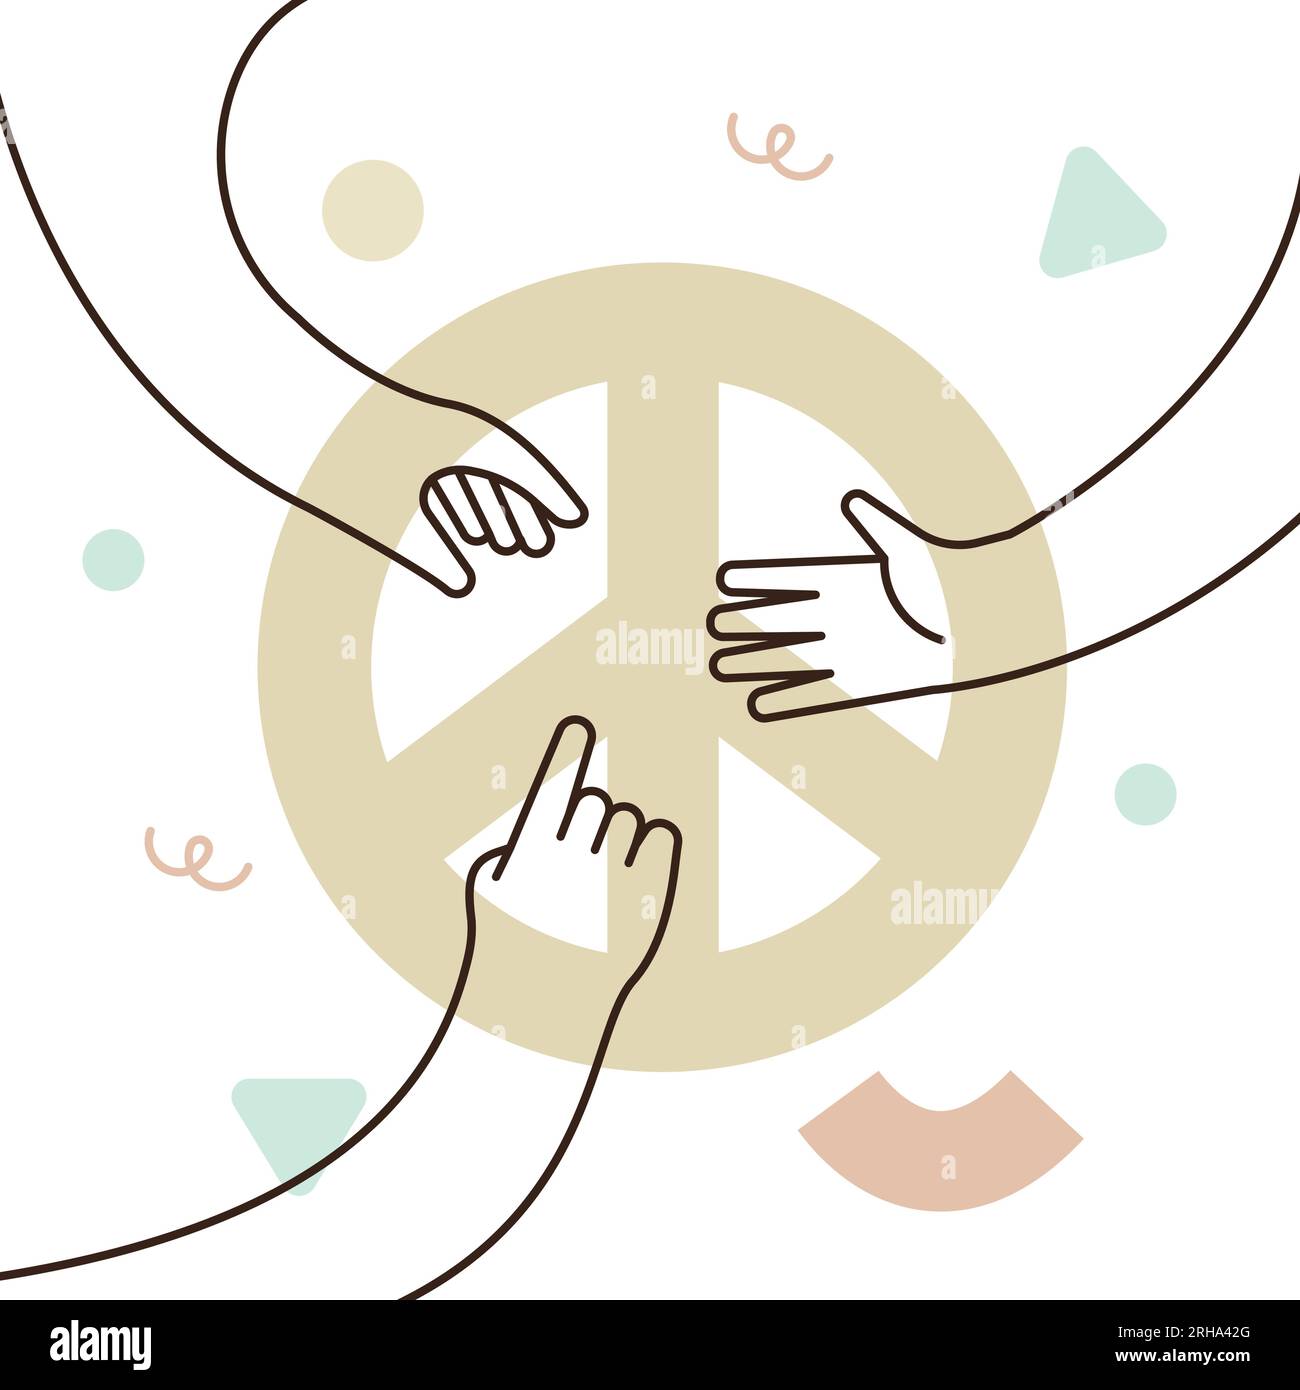 Groupe de personnes mains créent ensemble l'illustration vectorielle symbole de paix. Concept d'aide sociale, coopération, collaboration, non-violence, pas de guerre. Illustration de Vecteur